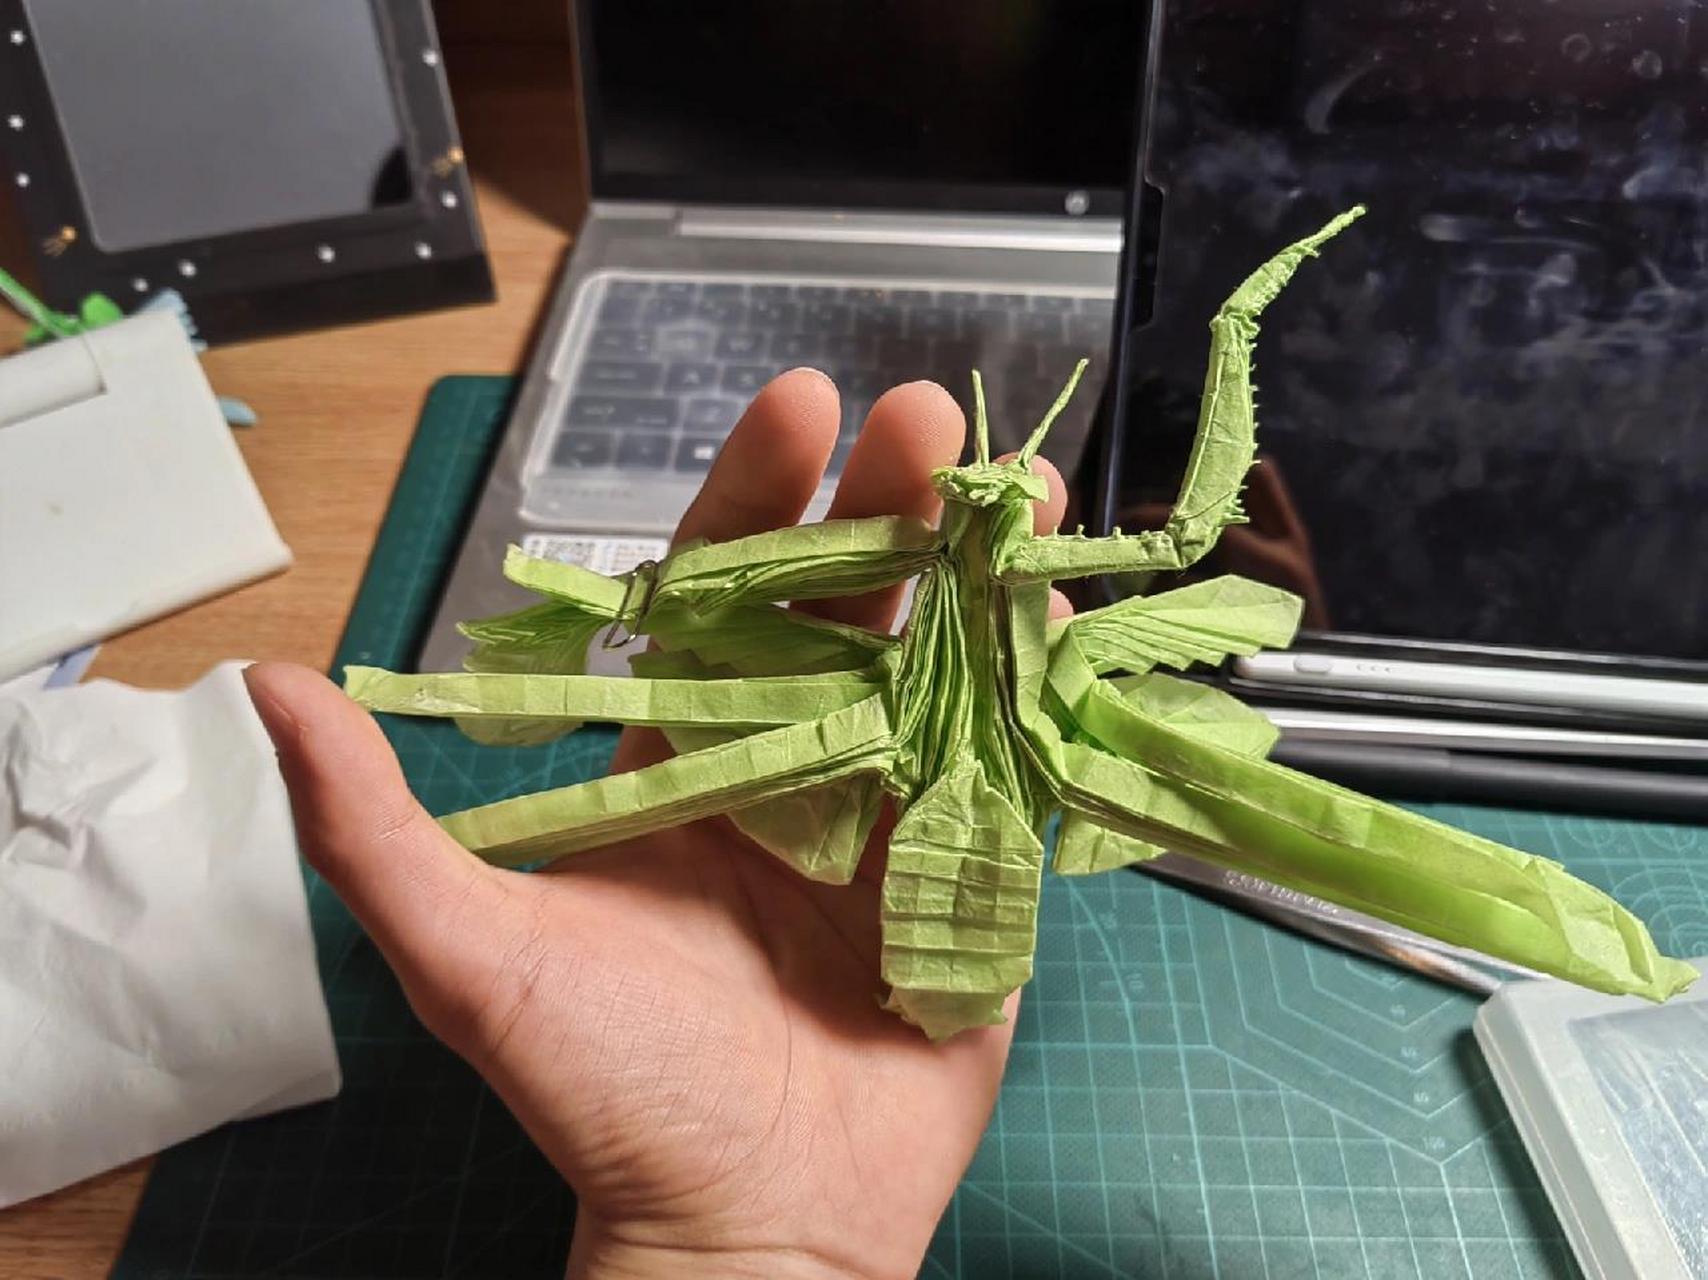 01我折出了世界上最复杂的折纸螳螂 设计:今井幸太 折拍:我 用纸